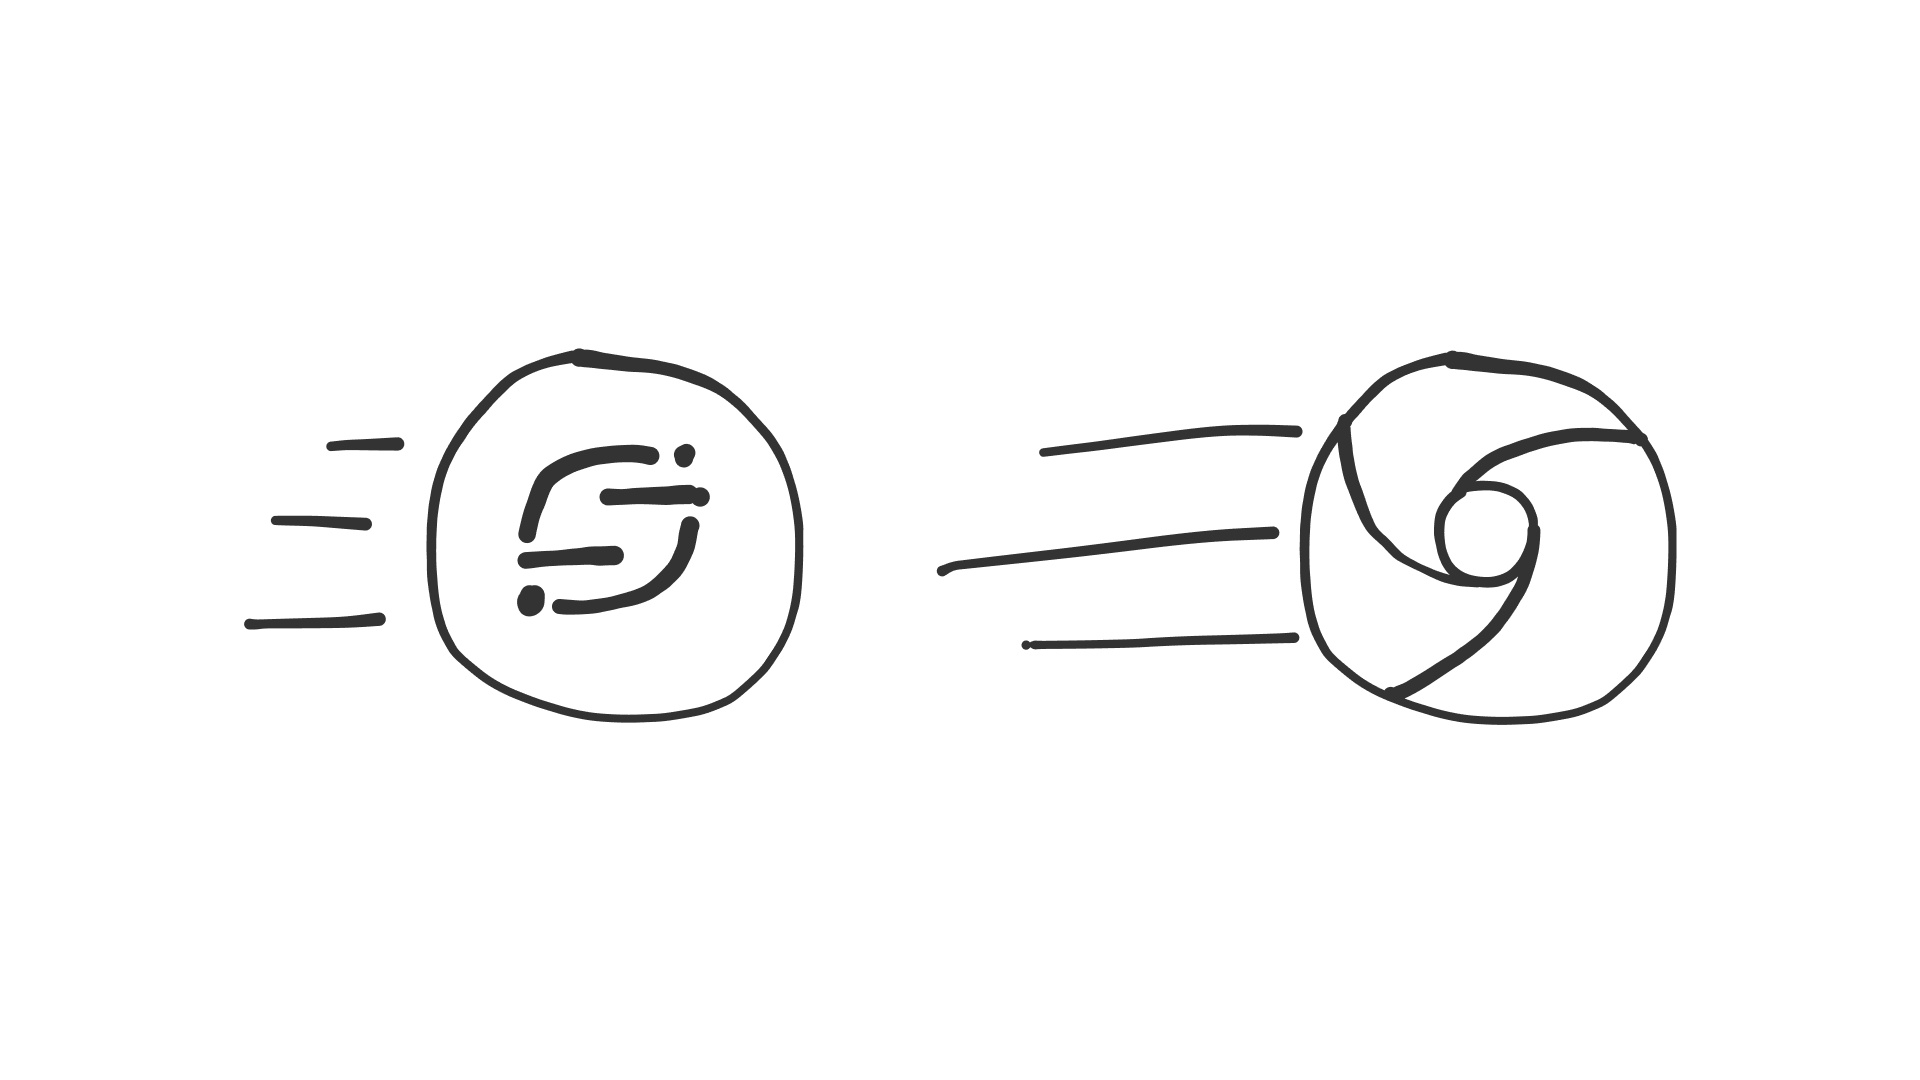 Segment.io-logo outrun by Chromium logo.